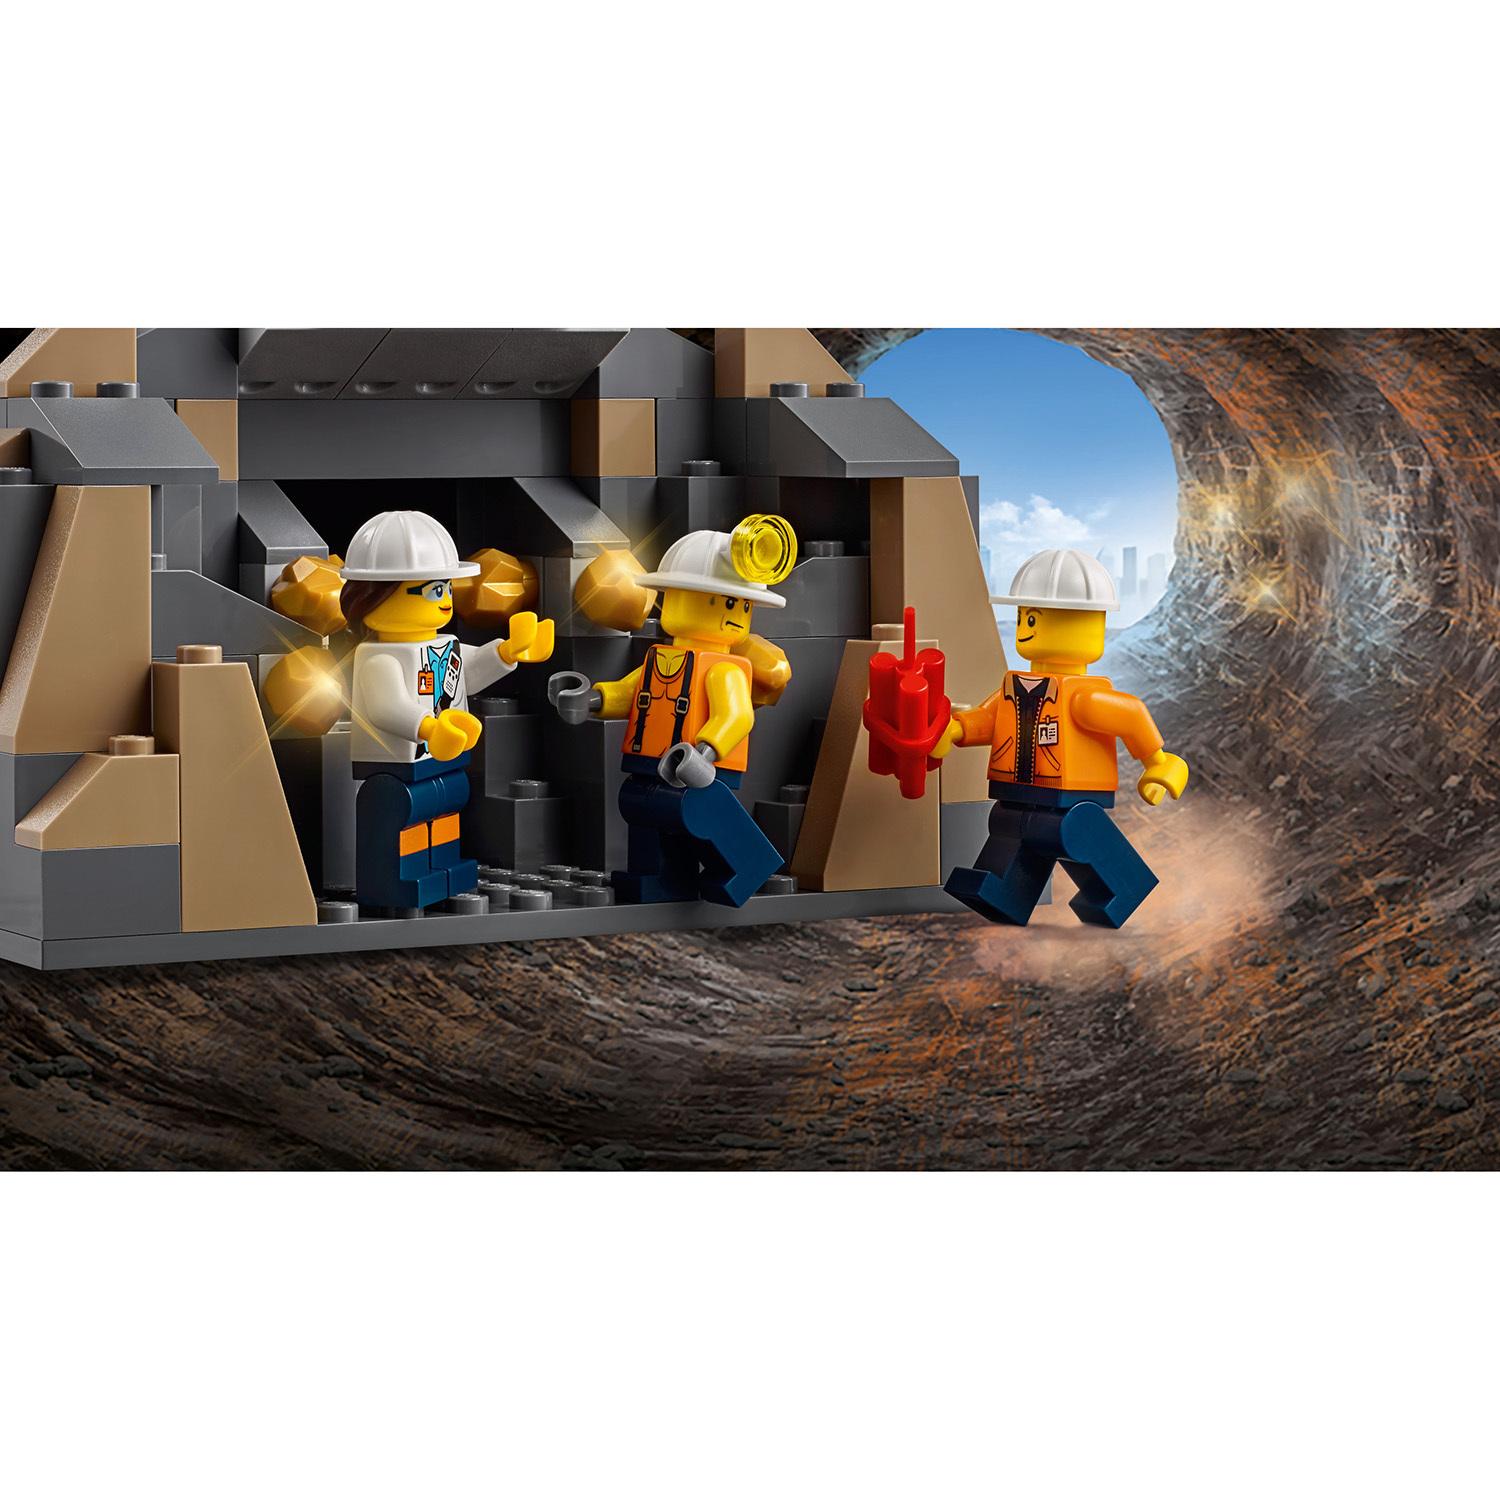 Конструктор Lego City - Тяжелый бур для горных работ City Mining  